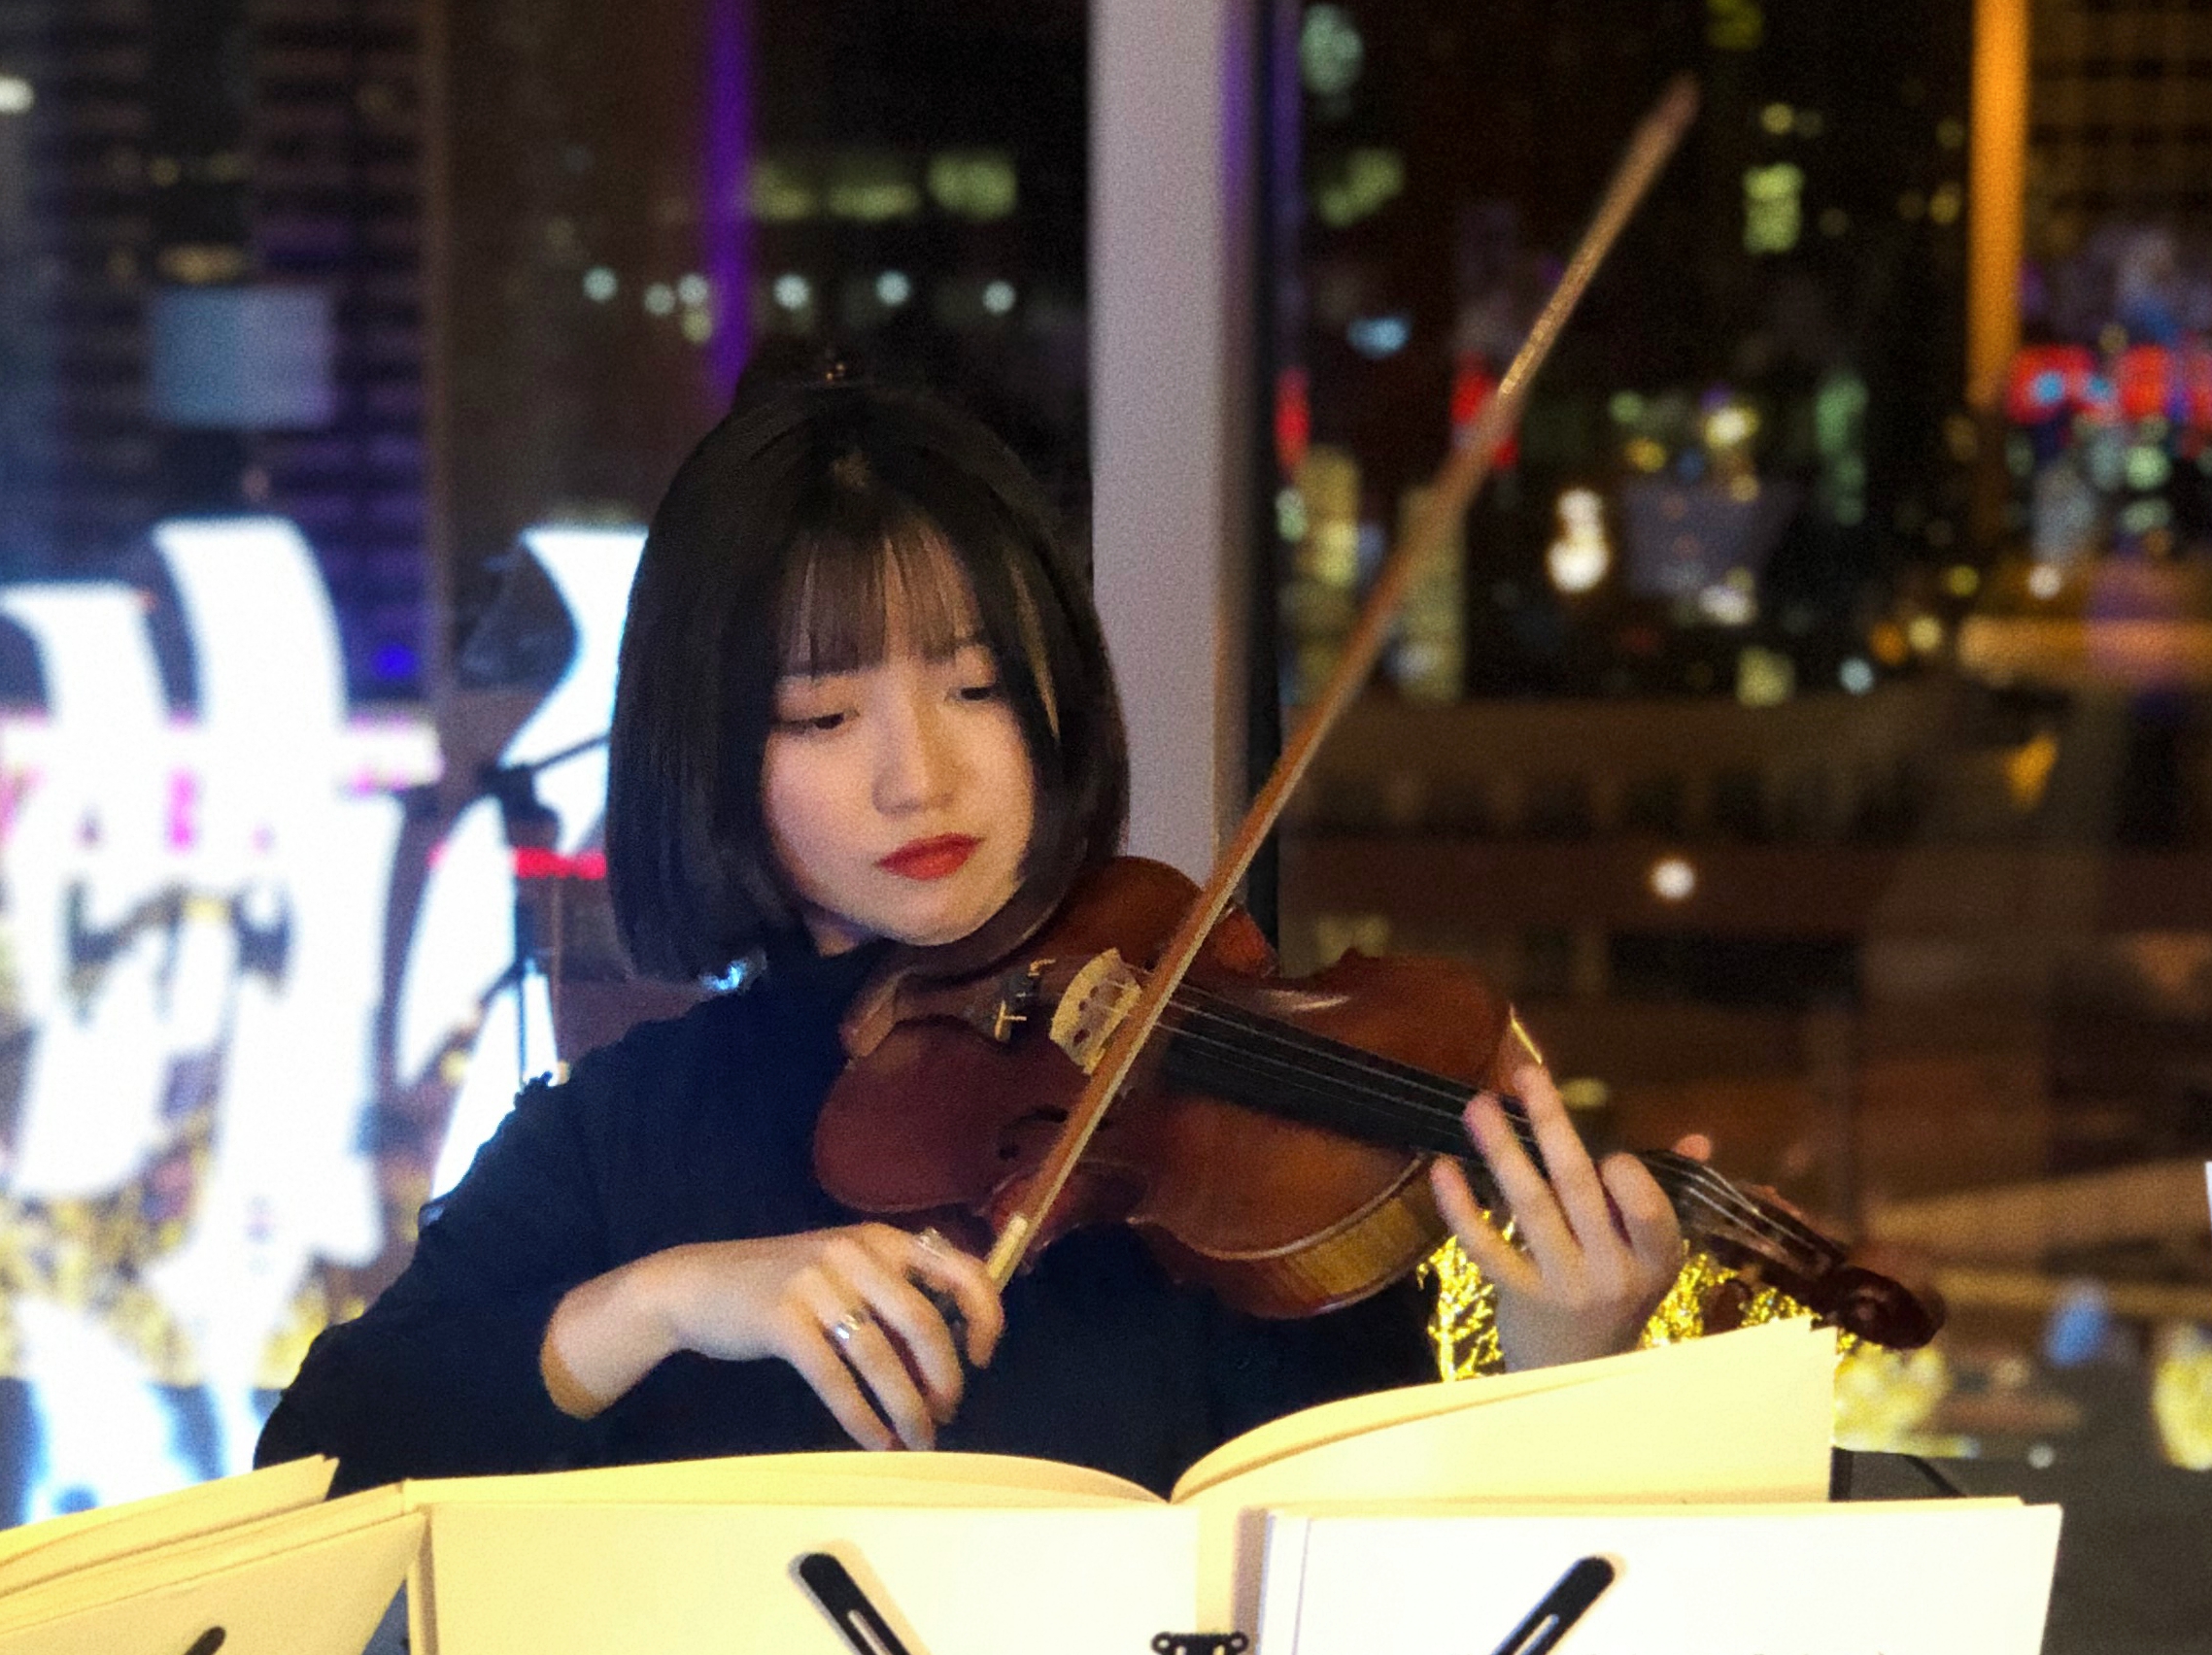 复制小提琴·张君妍丨一对一正式课